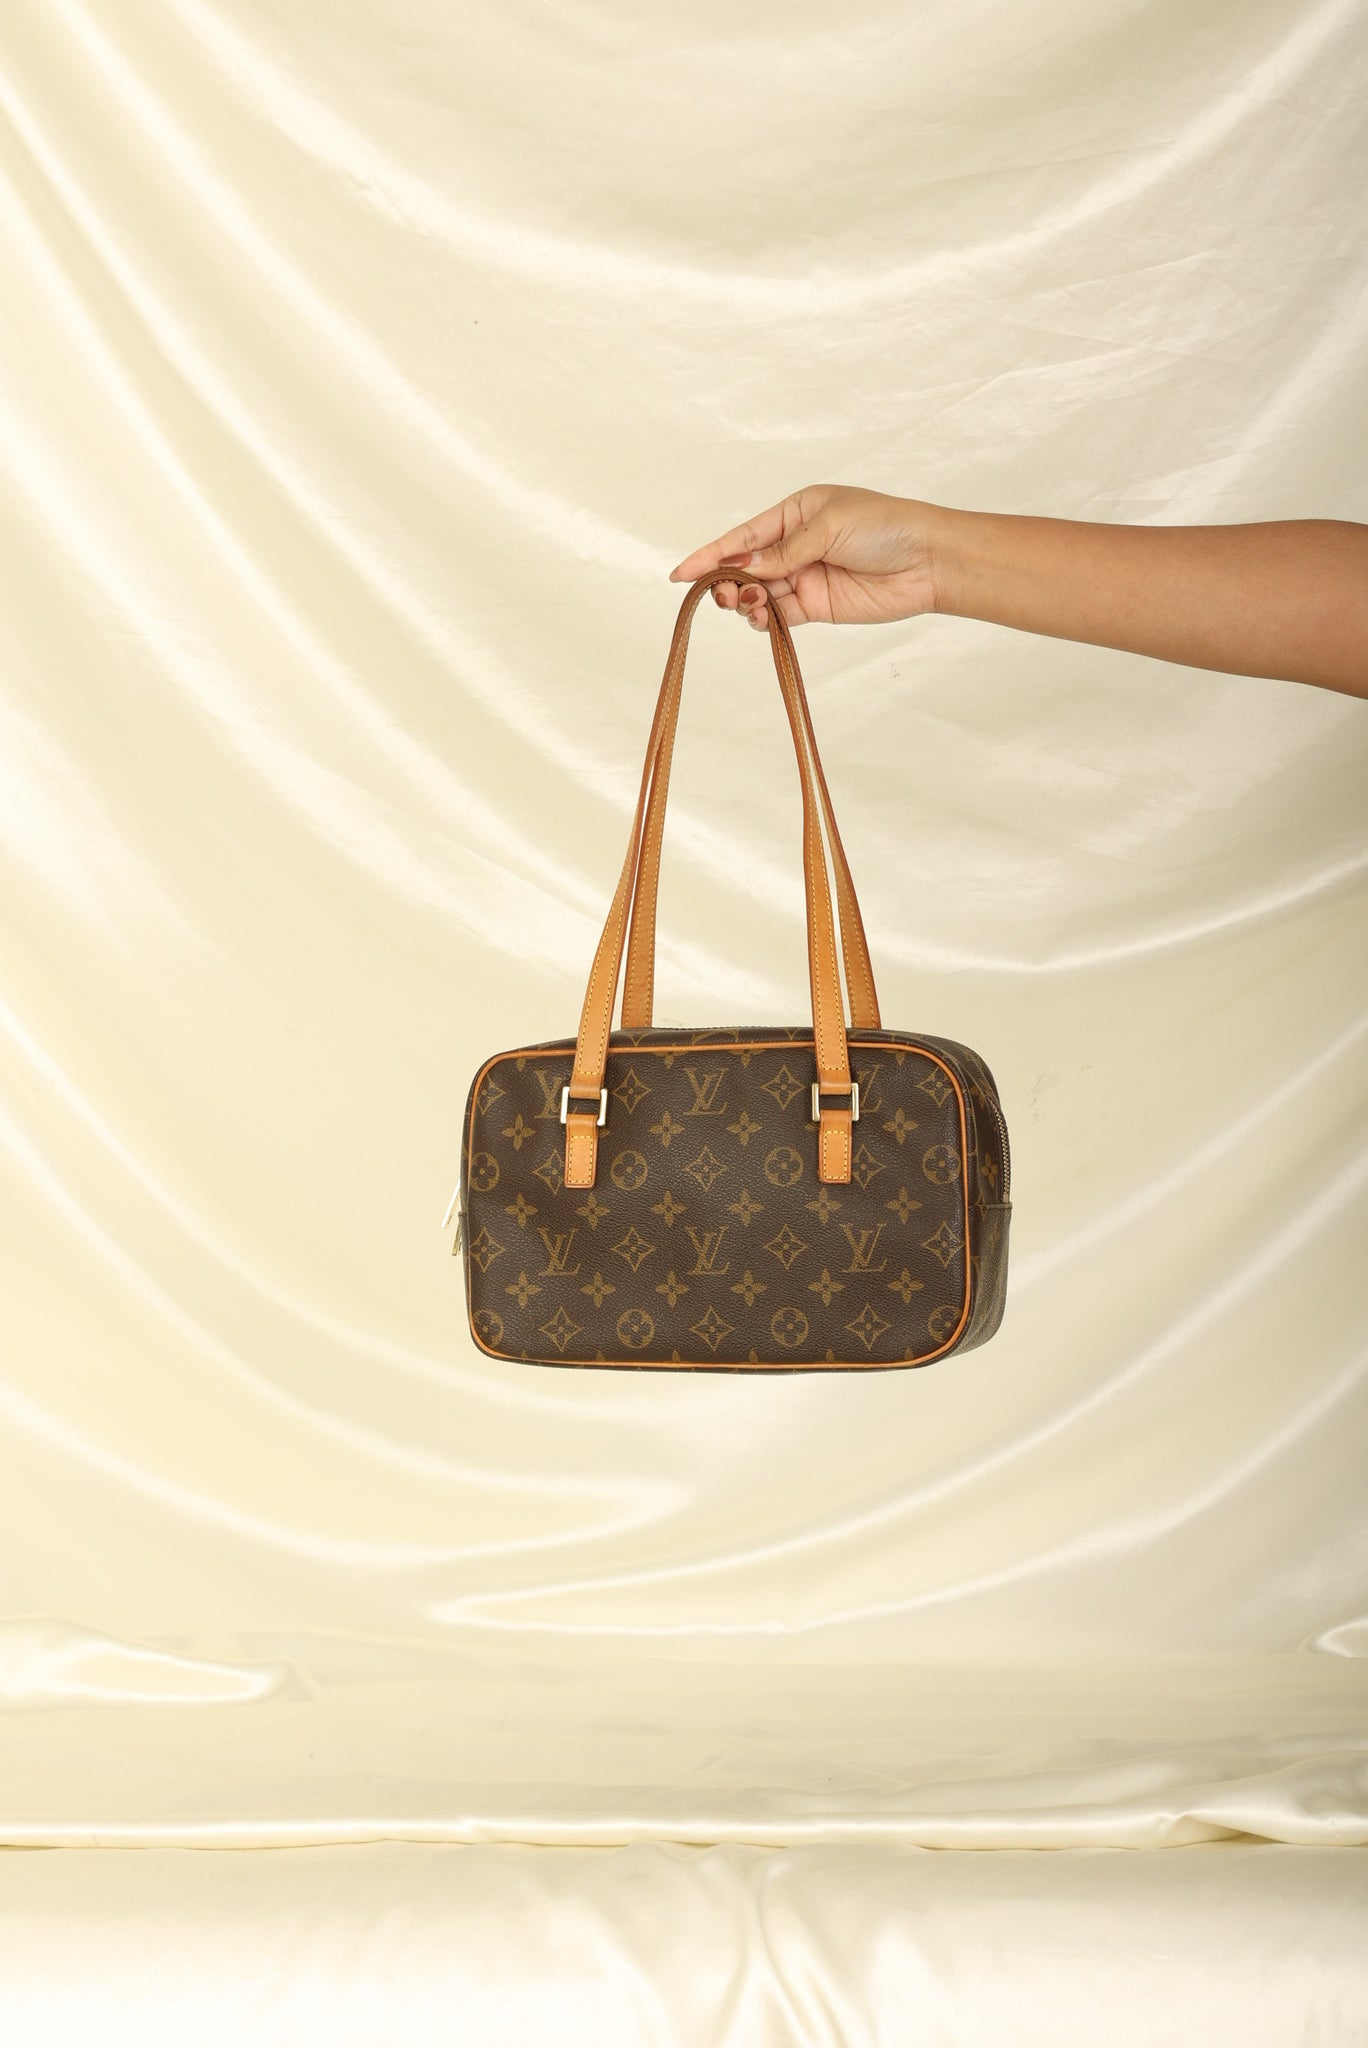 Louis Vuitton Cite MM Bag